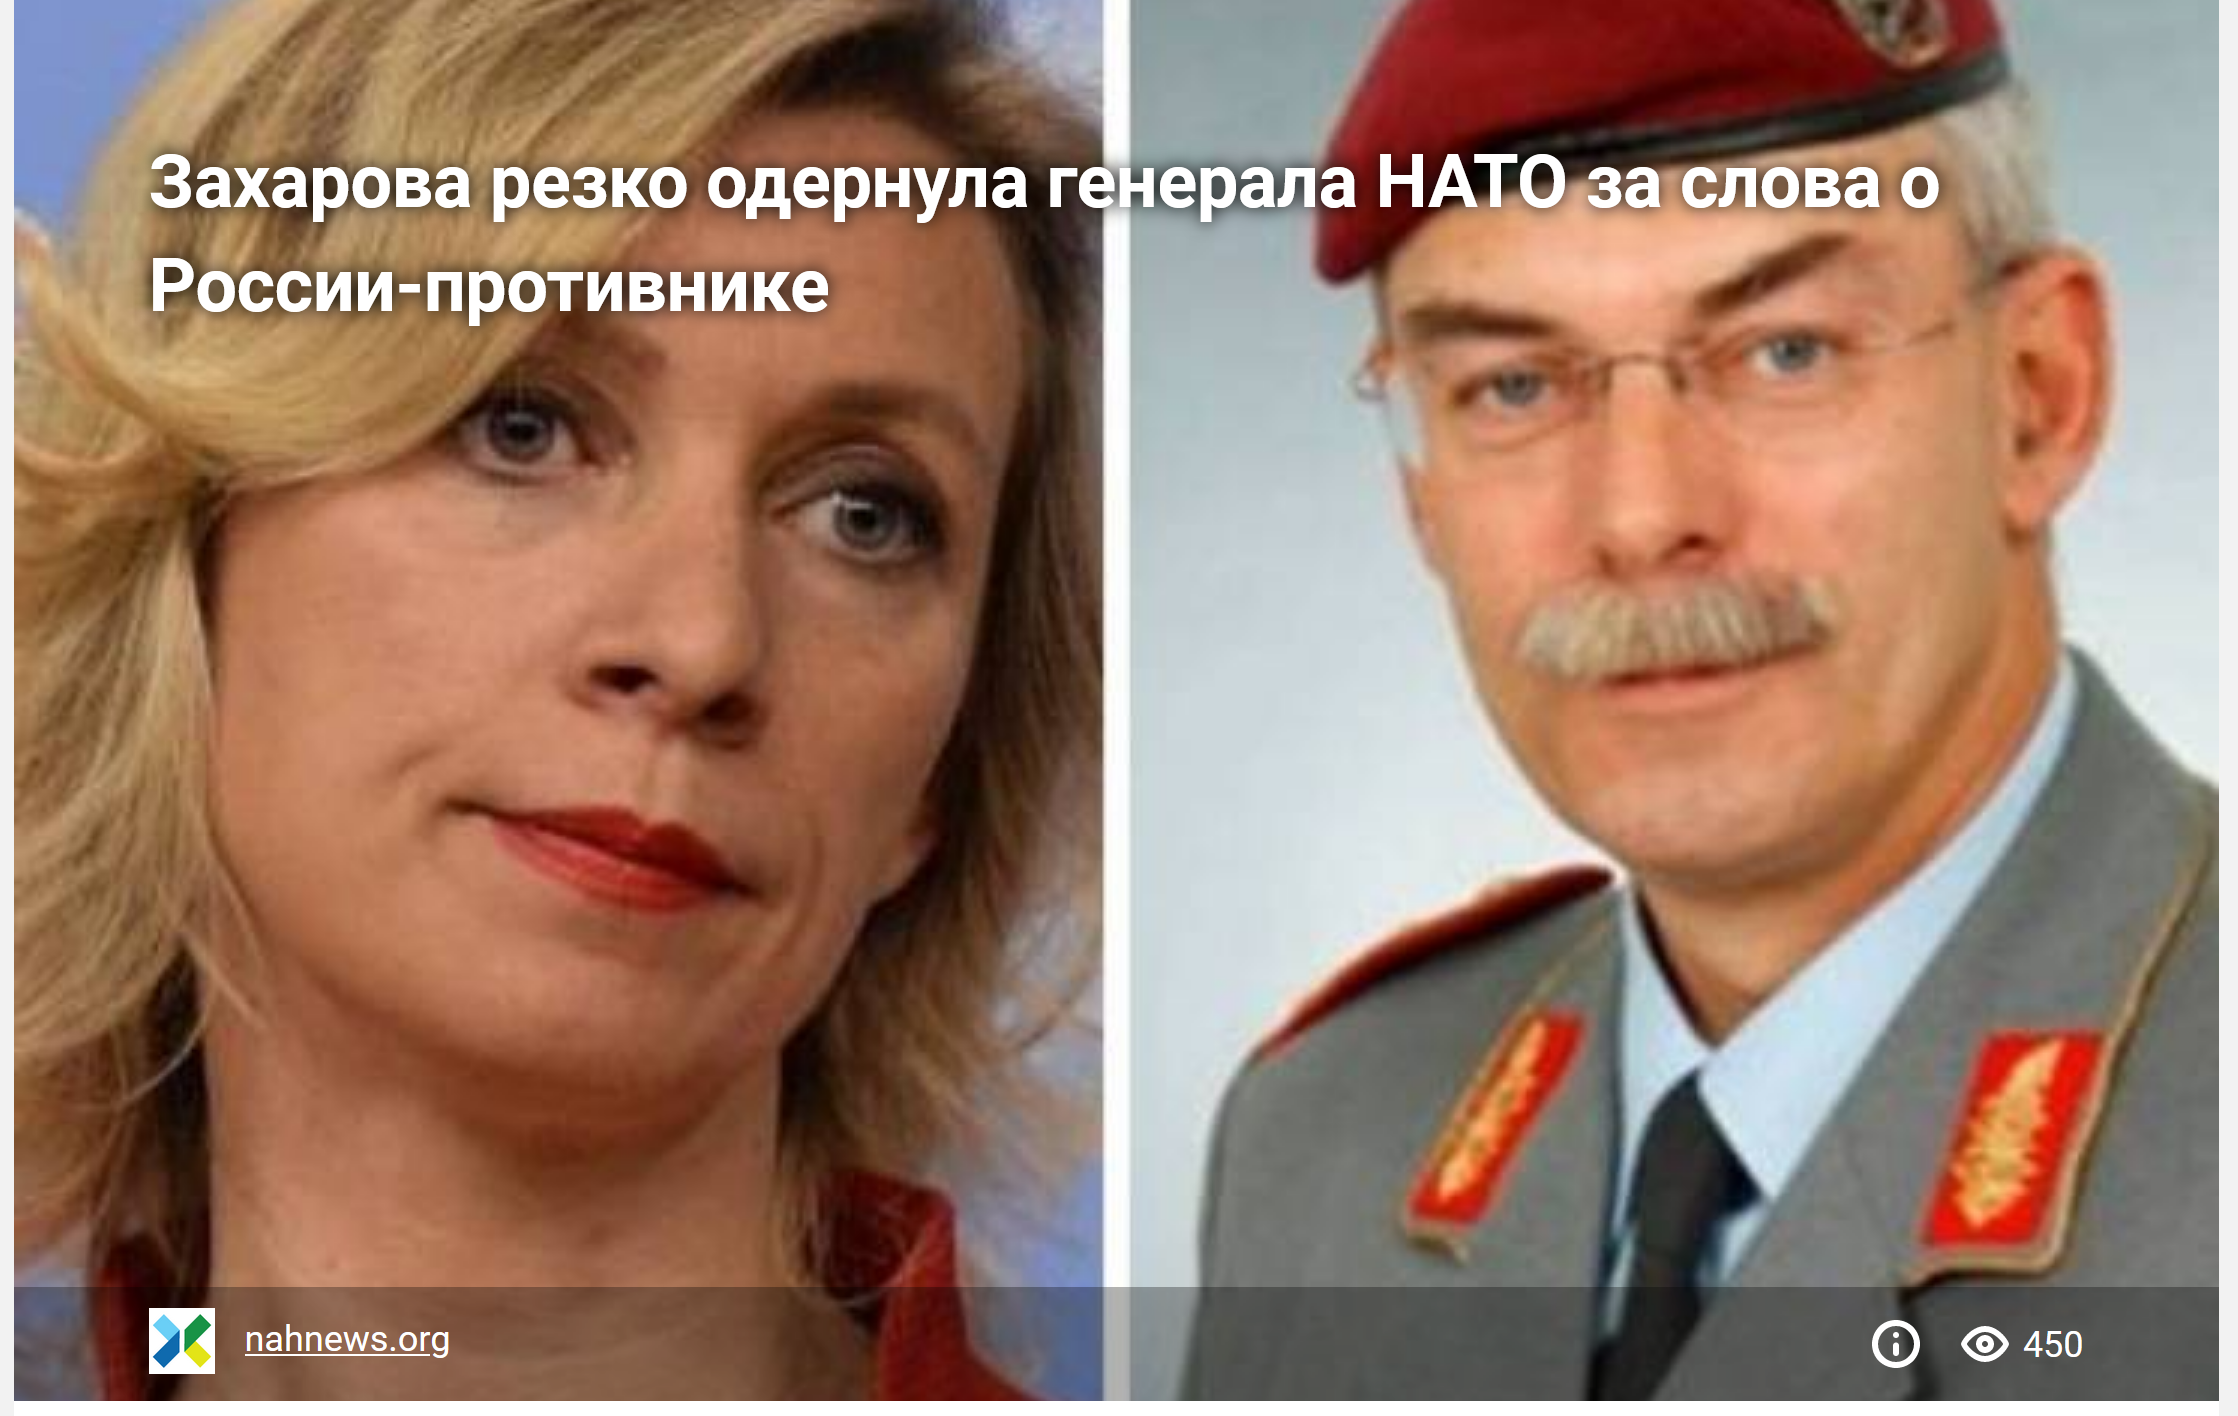 Захарова резко одернула генерала НАТО за слова о России-противнике 